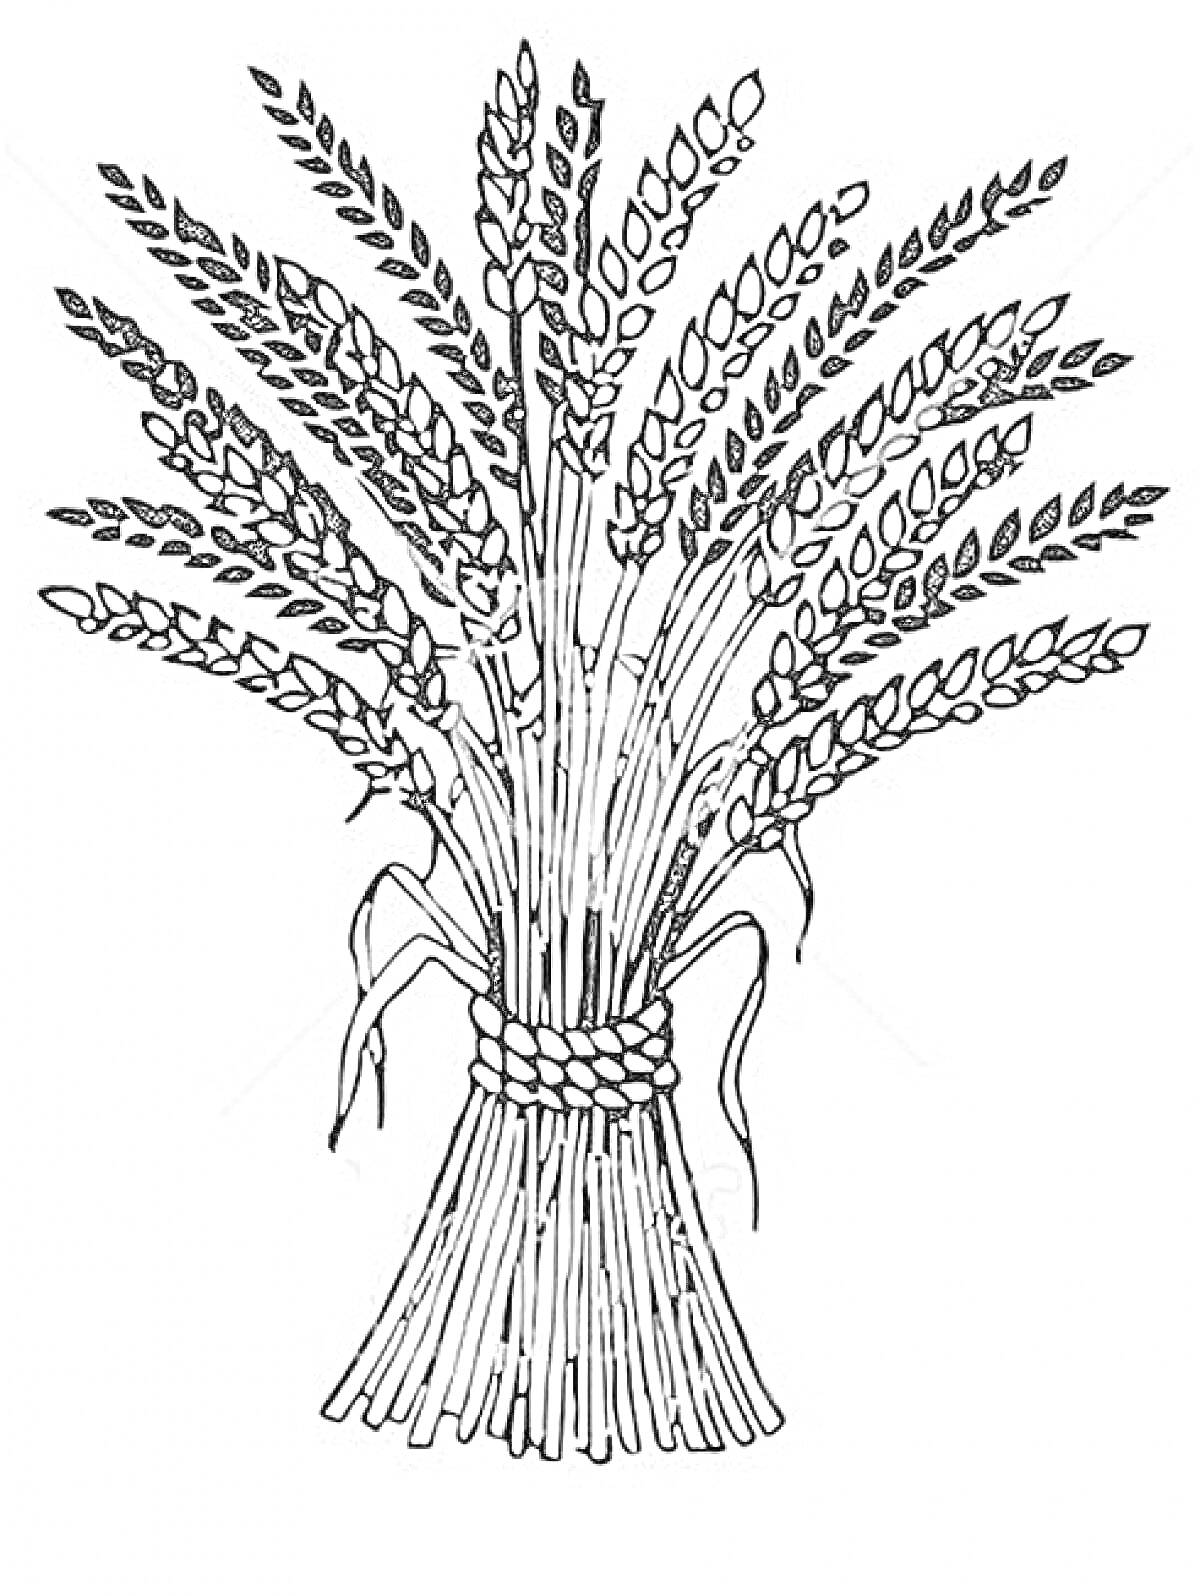 Пучок колосьев пшеницы, перевязанных веревкой